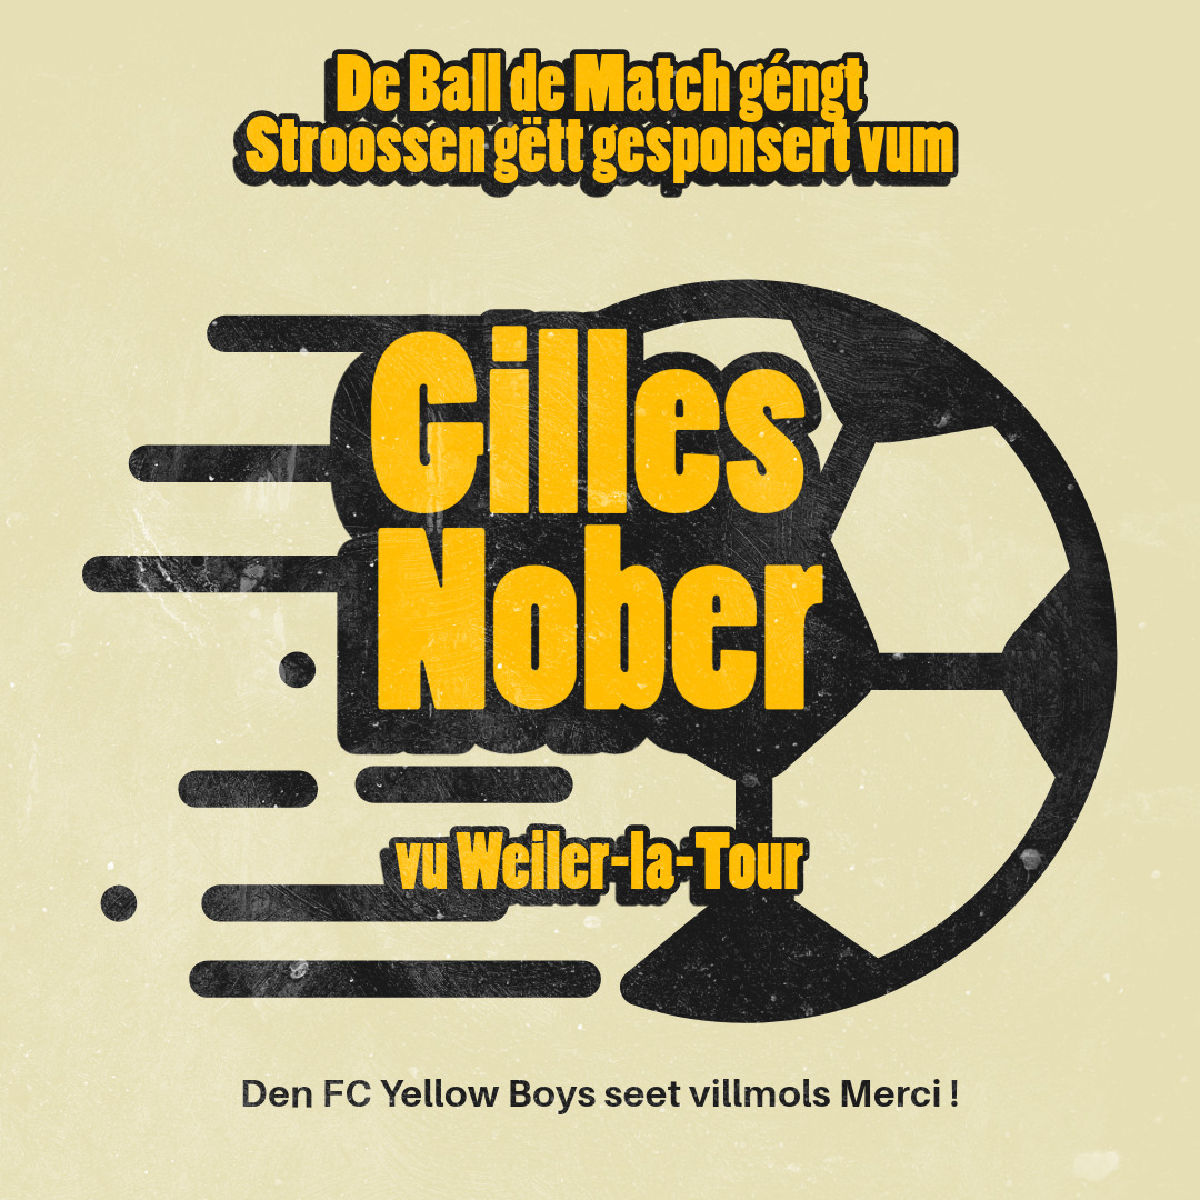 De Ball de Match géngt Stroossen gëtt gesponsert vum Gilles Nober vu Weiler-la-Tour. Villmols Merci